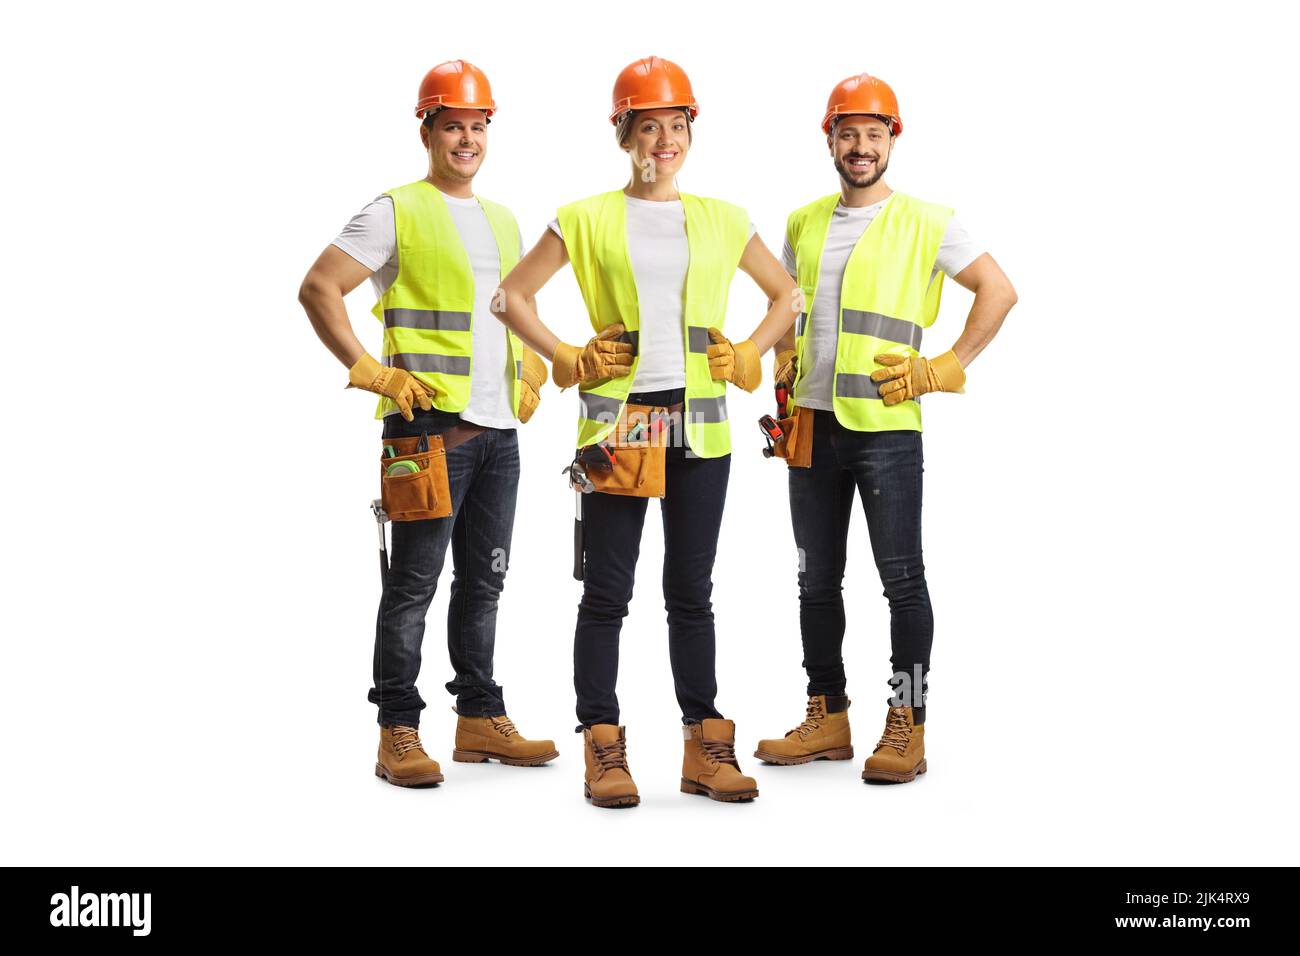 Retrato completo de los ingenieros del emplazamiento que llevan un cinturón de herramientas y chalecos de seguridad aislados sobre fondo blanco Foto de stock